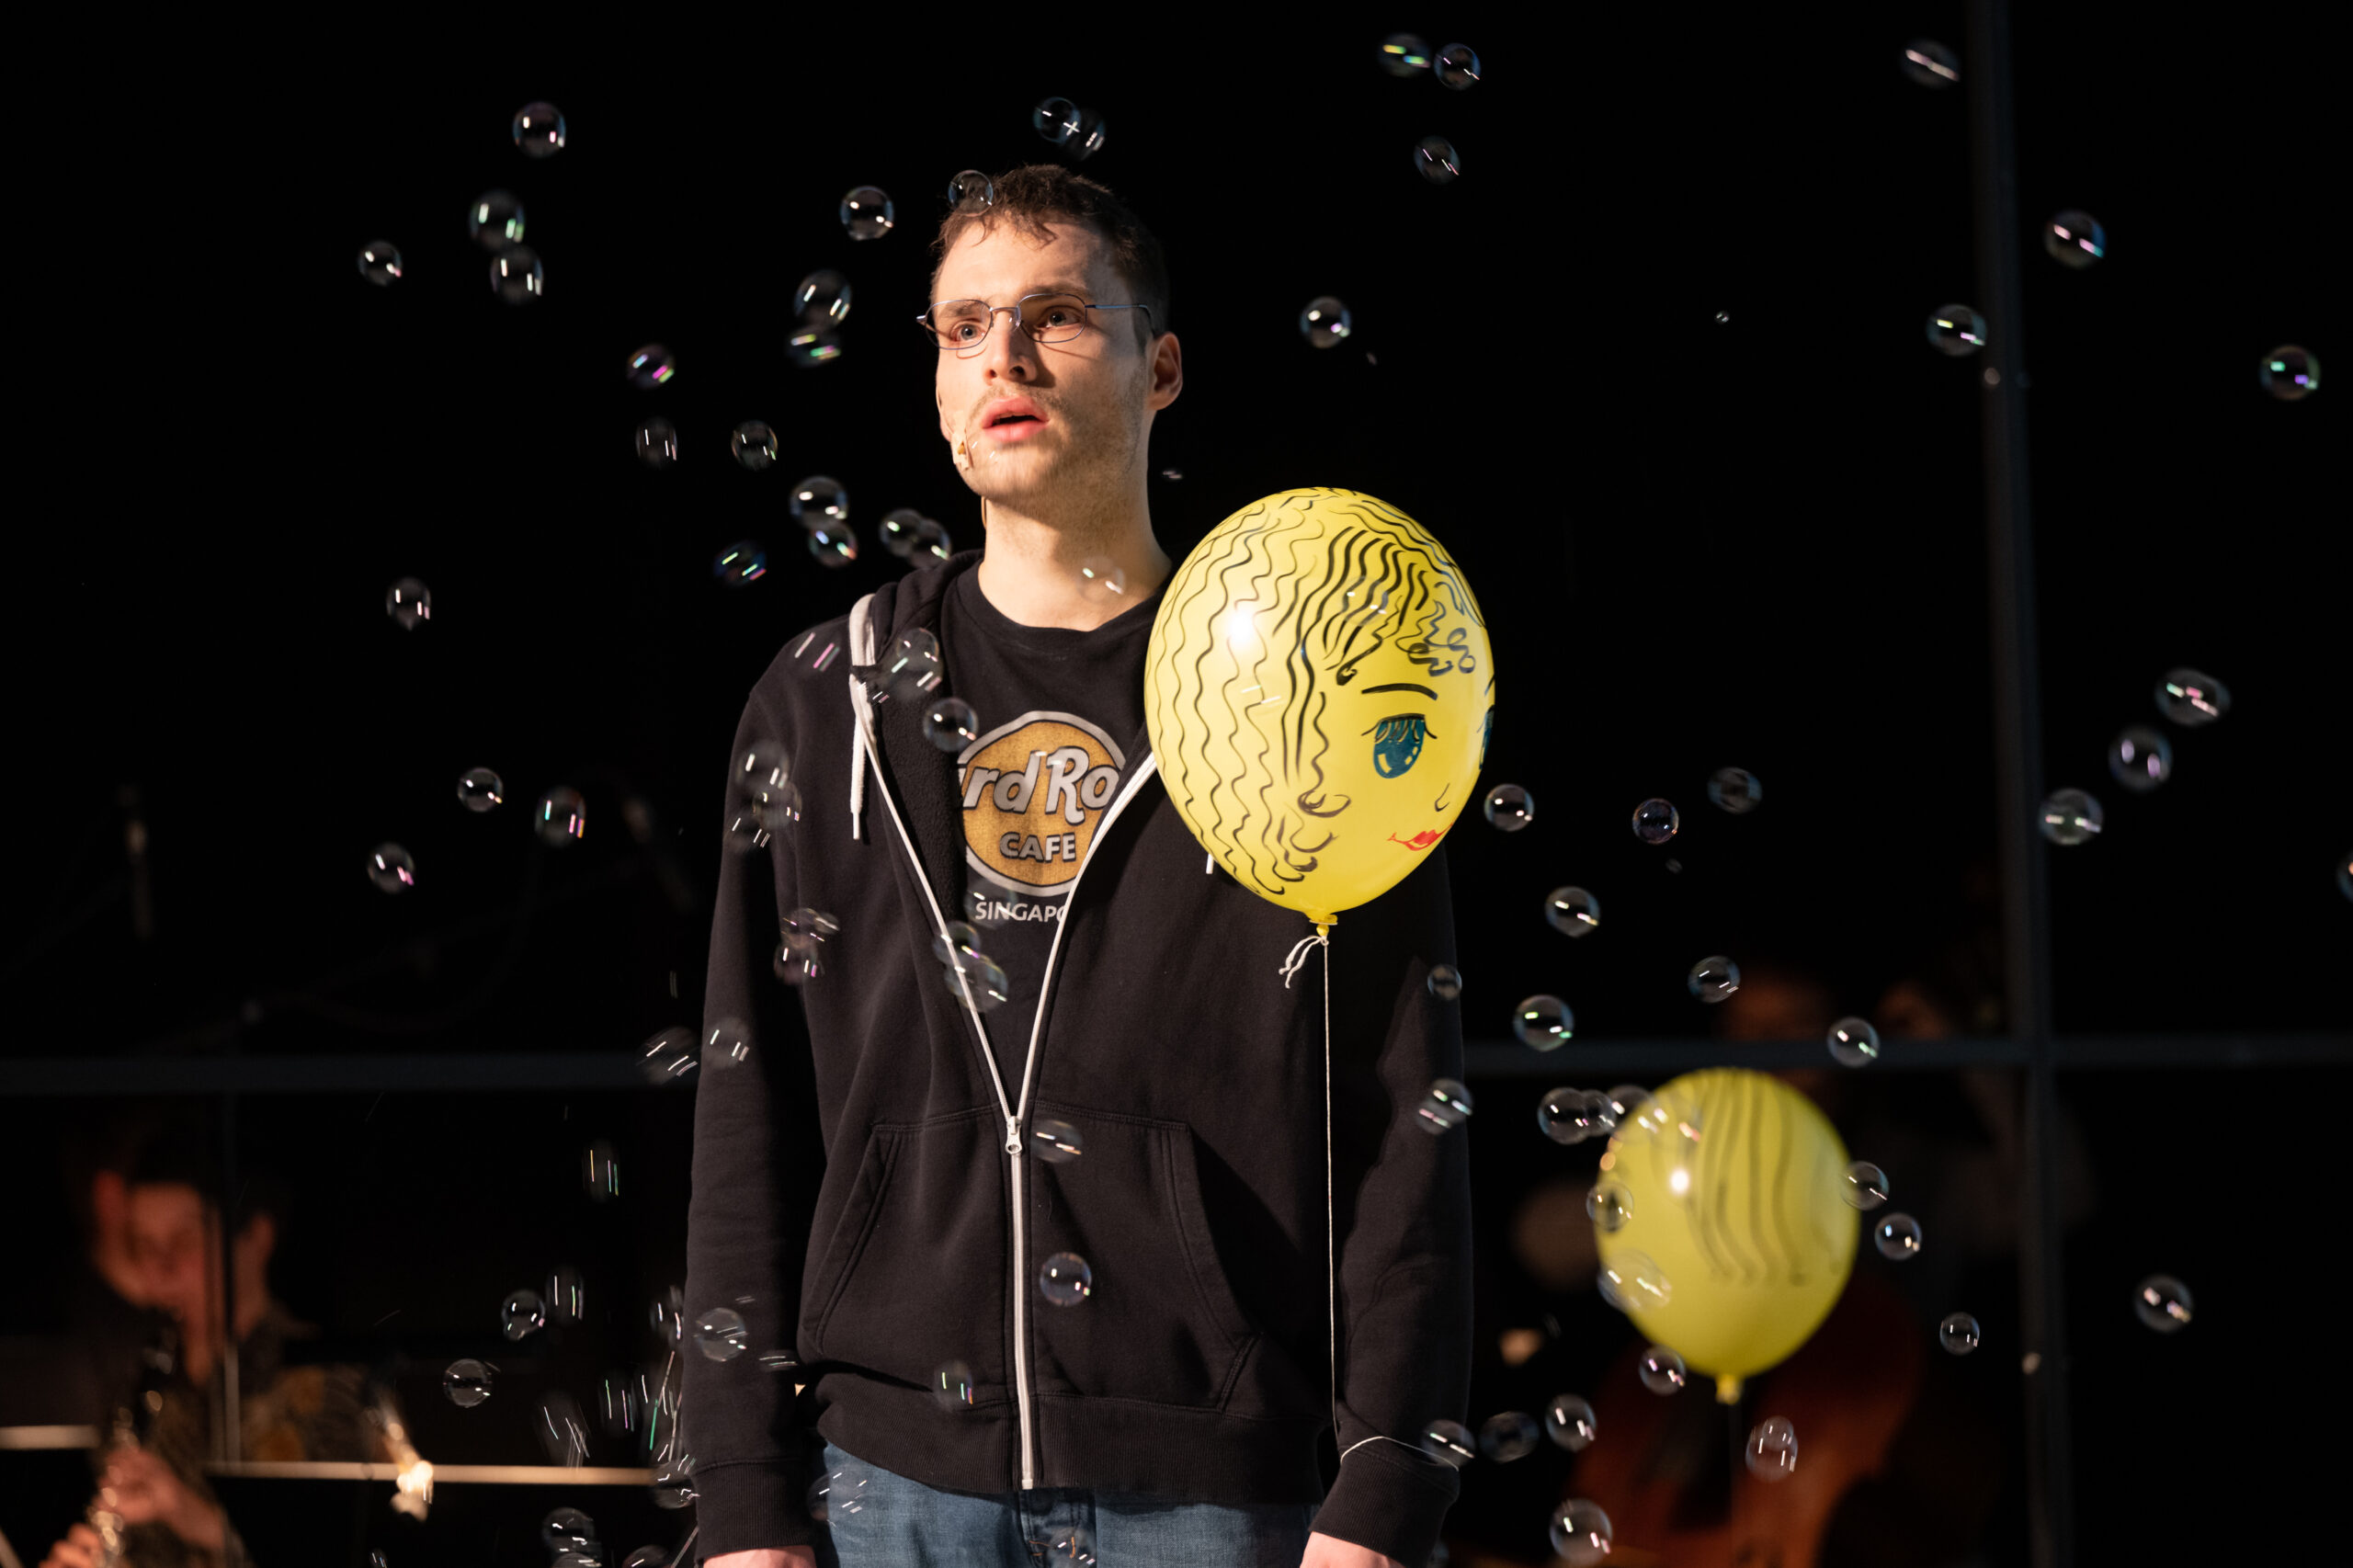 Freak mit Brille und Luftballon weint, um ihn herum Seifenblasen in der Luft